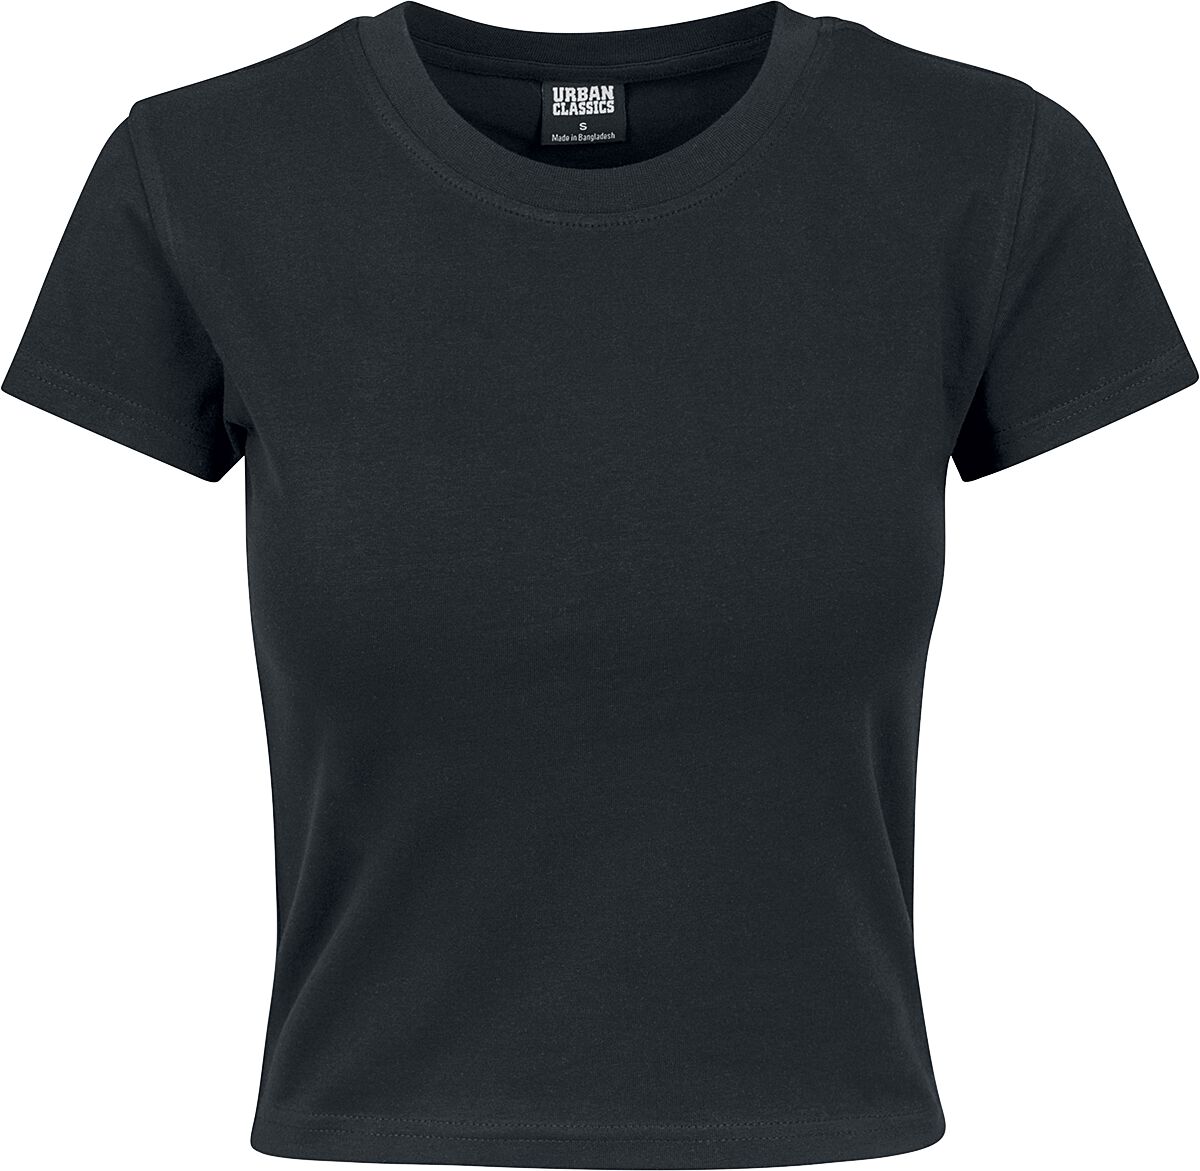 T-Shirt Manches courtes de Urban Classics - Crop Top Femme En Jersey Souple - XS à L - pour Femme - 